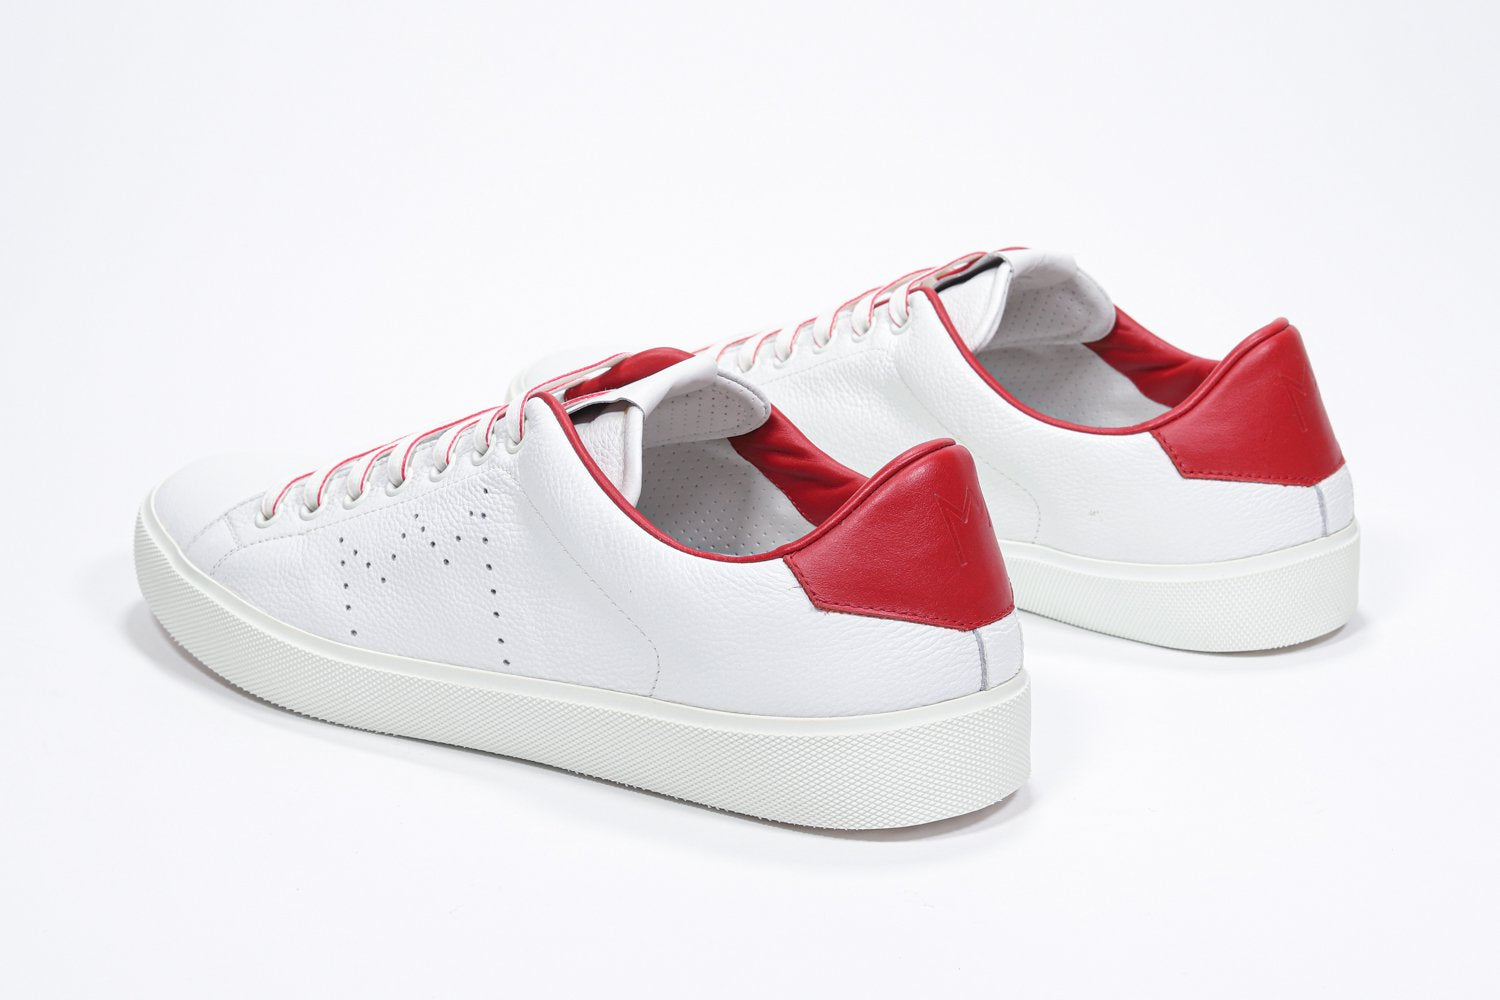 Vista posteriore a tre quarti di BASSE  sneaker  bianco con dettagli rossi e logo della corona traforato sulla tomaia. Tomaia in pelle e suola in gomma bianca.